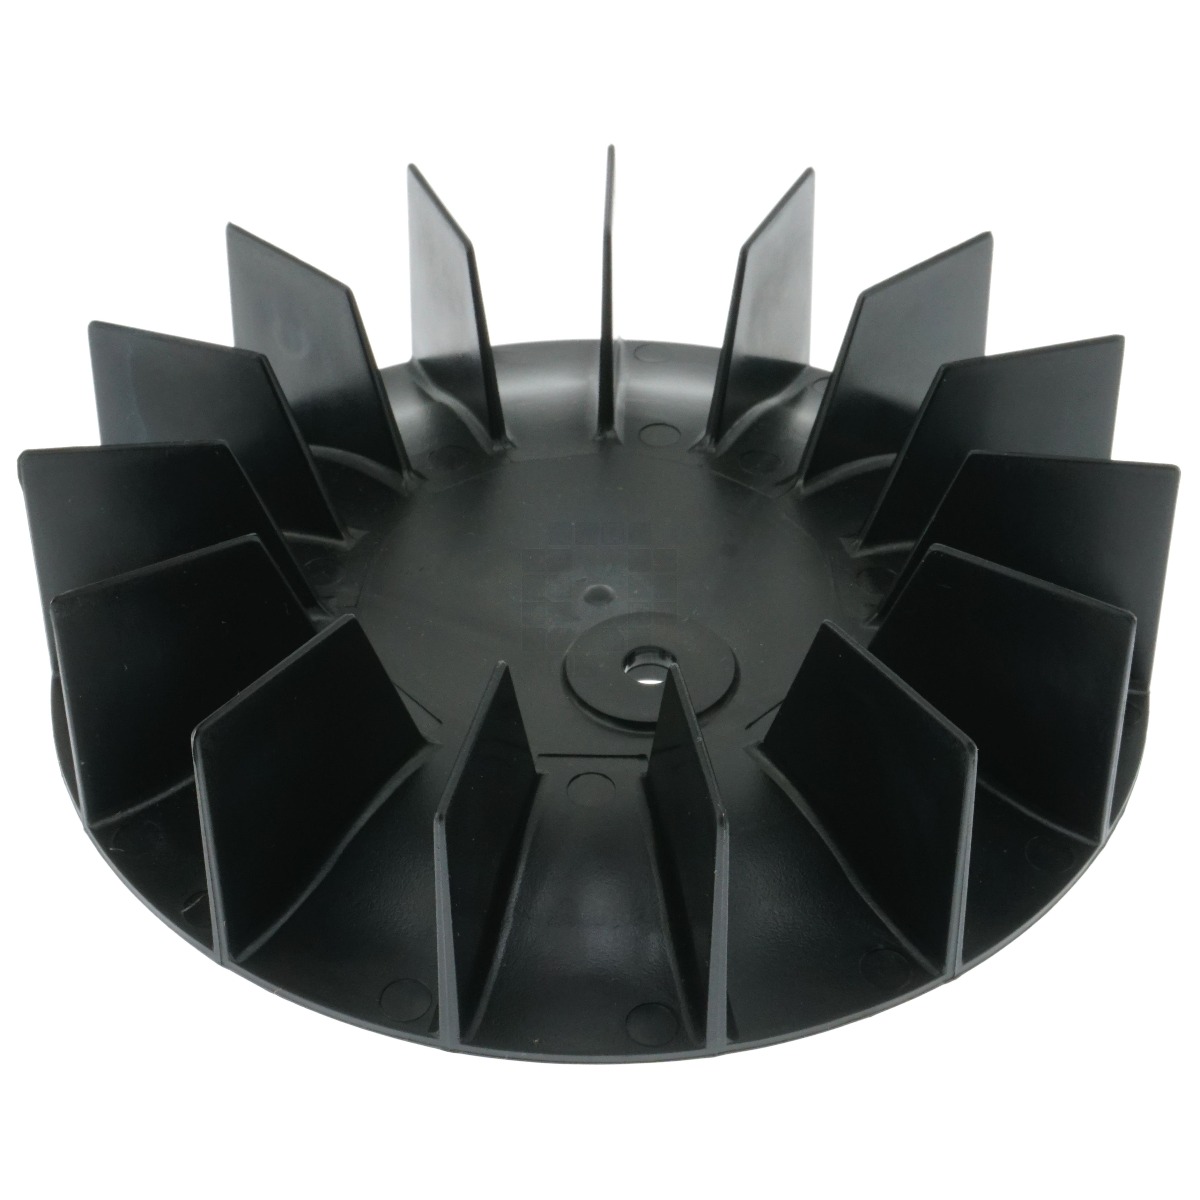 Porter-Cable, Devilbiss AC-0108 Plastic Fan, 5.75" Diameter